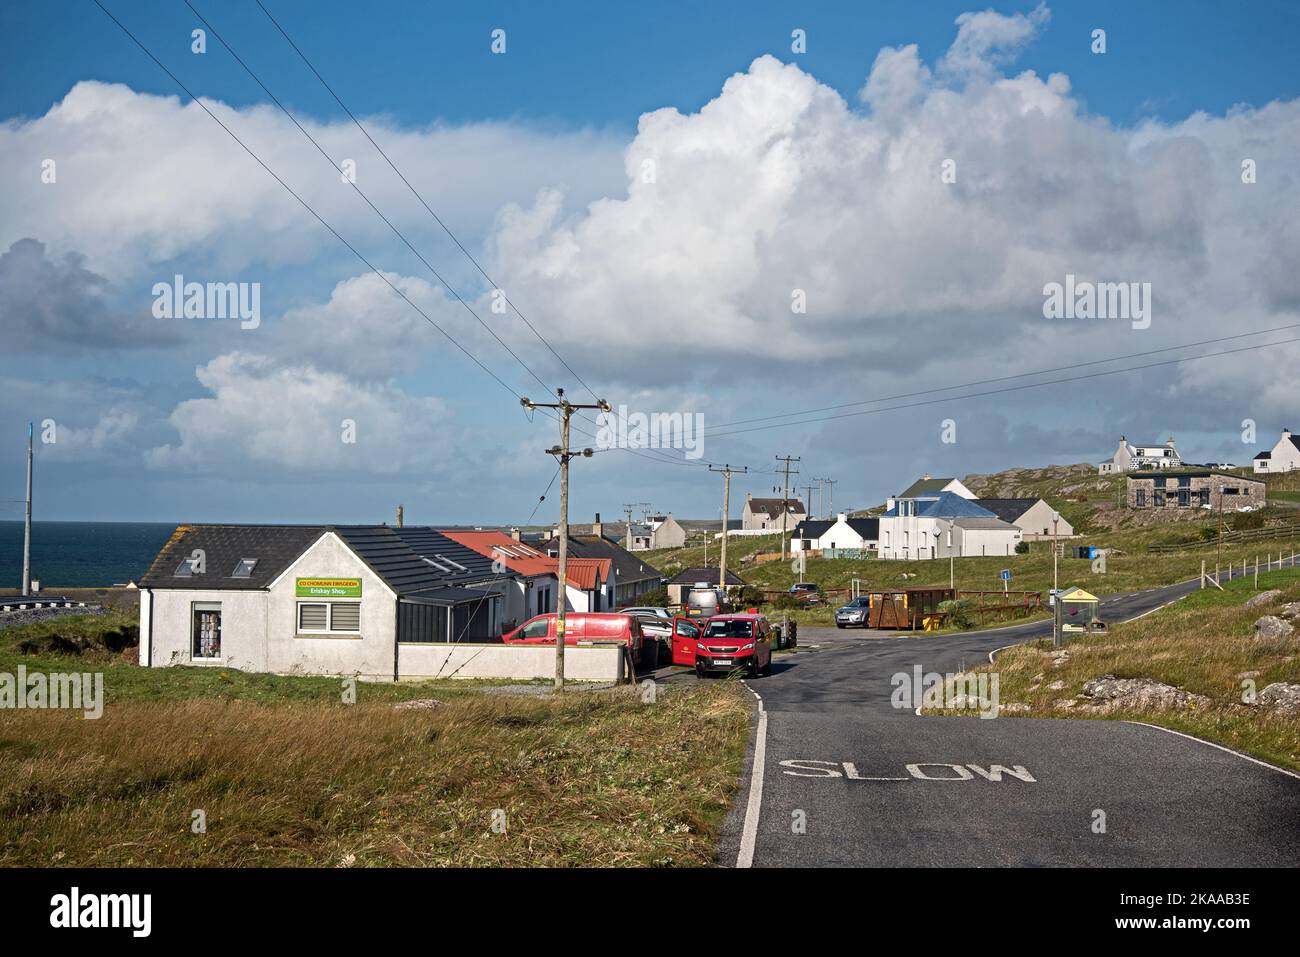 The Village, Am Baile, on the Isle of Eriskay, Outer Hebrides, Scotland, UK. Stock Photo